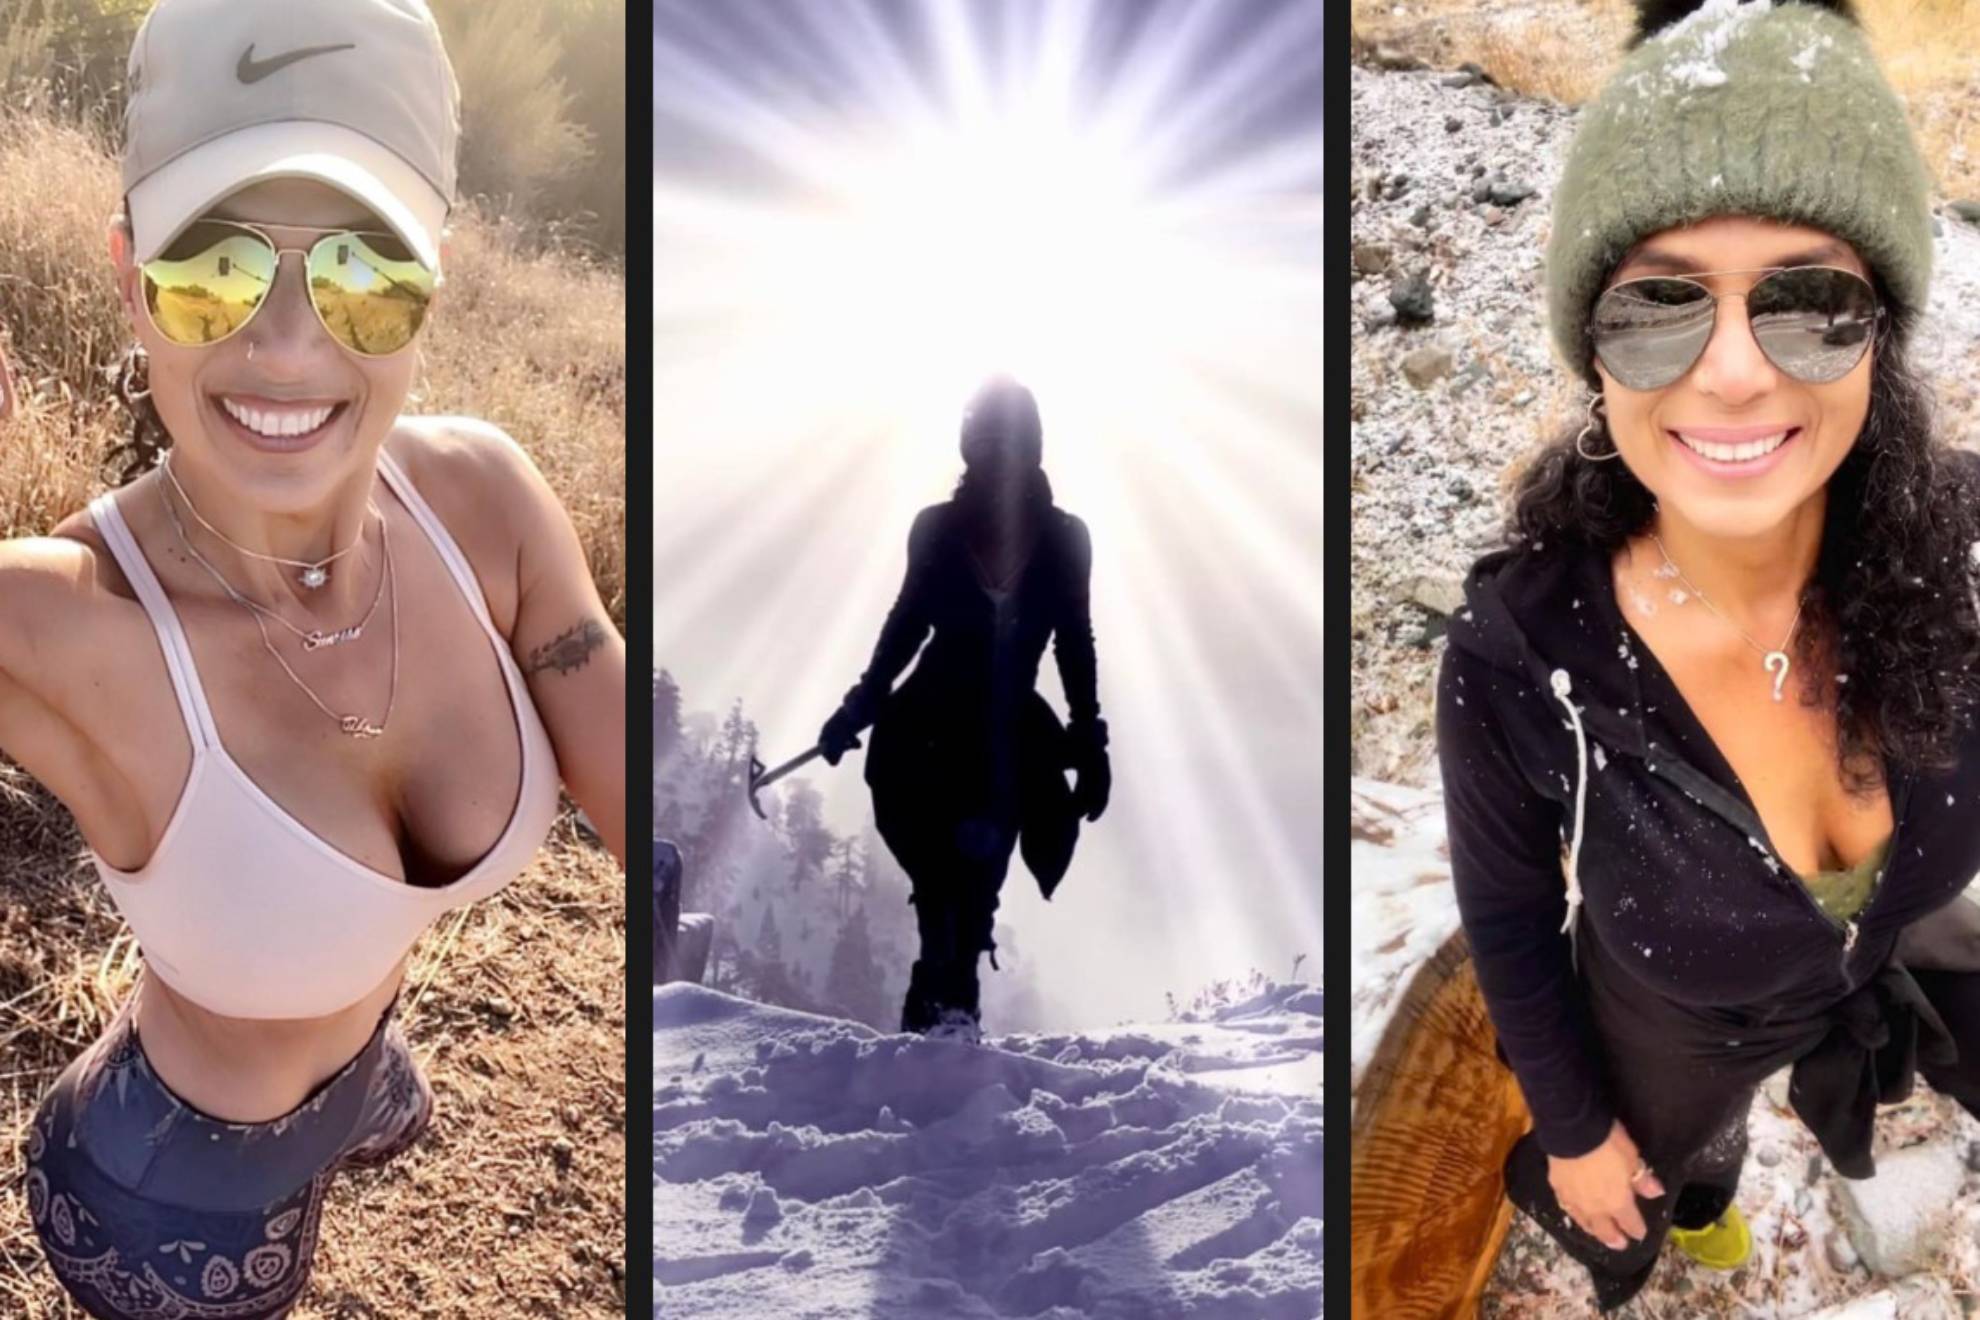 Muere la «reina del senderismo» en un accidente en la montaa: sufri una cada de ms de 210 metros – Crystal Paula Gonzalez-Landas, famosa senderista…